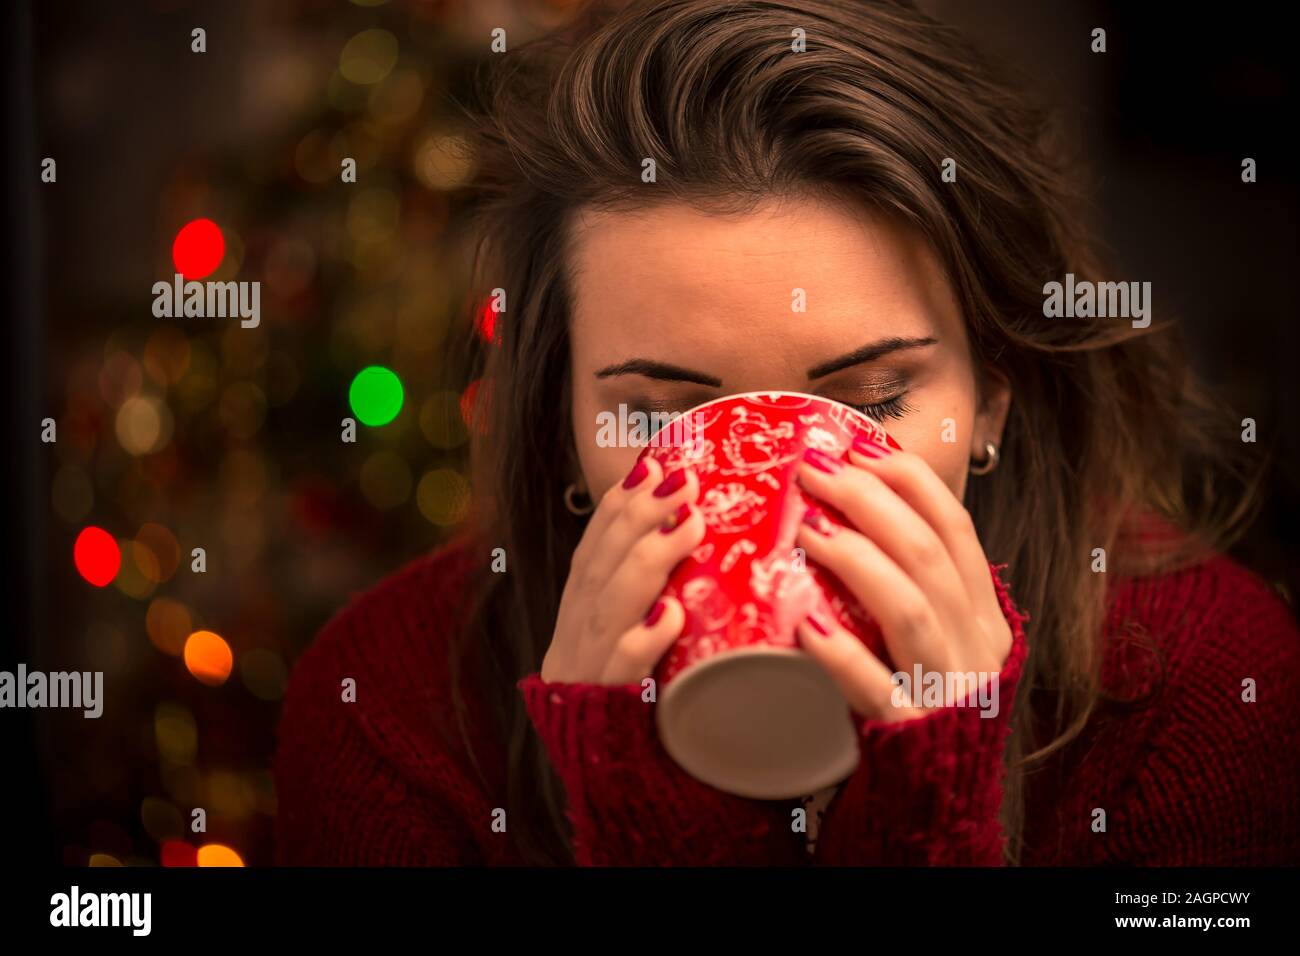 Abend, Freizeit, weihnachten, Winter und Menschen Konzept - glückliche junge Frau mit einer Tasse Kaffee oder Tee zu Hause. Gemütliches Konzept. Stockfoto